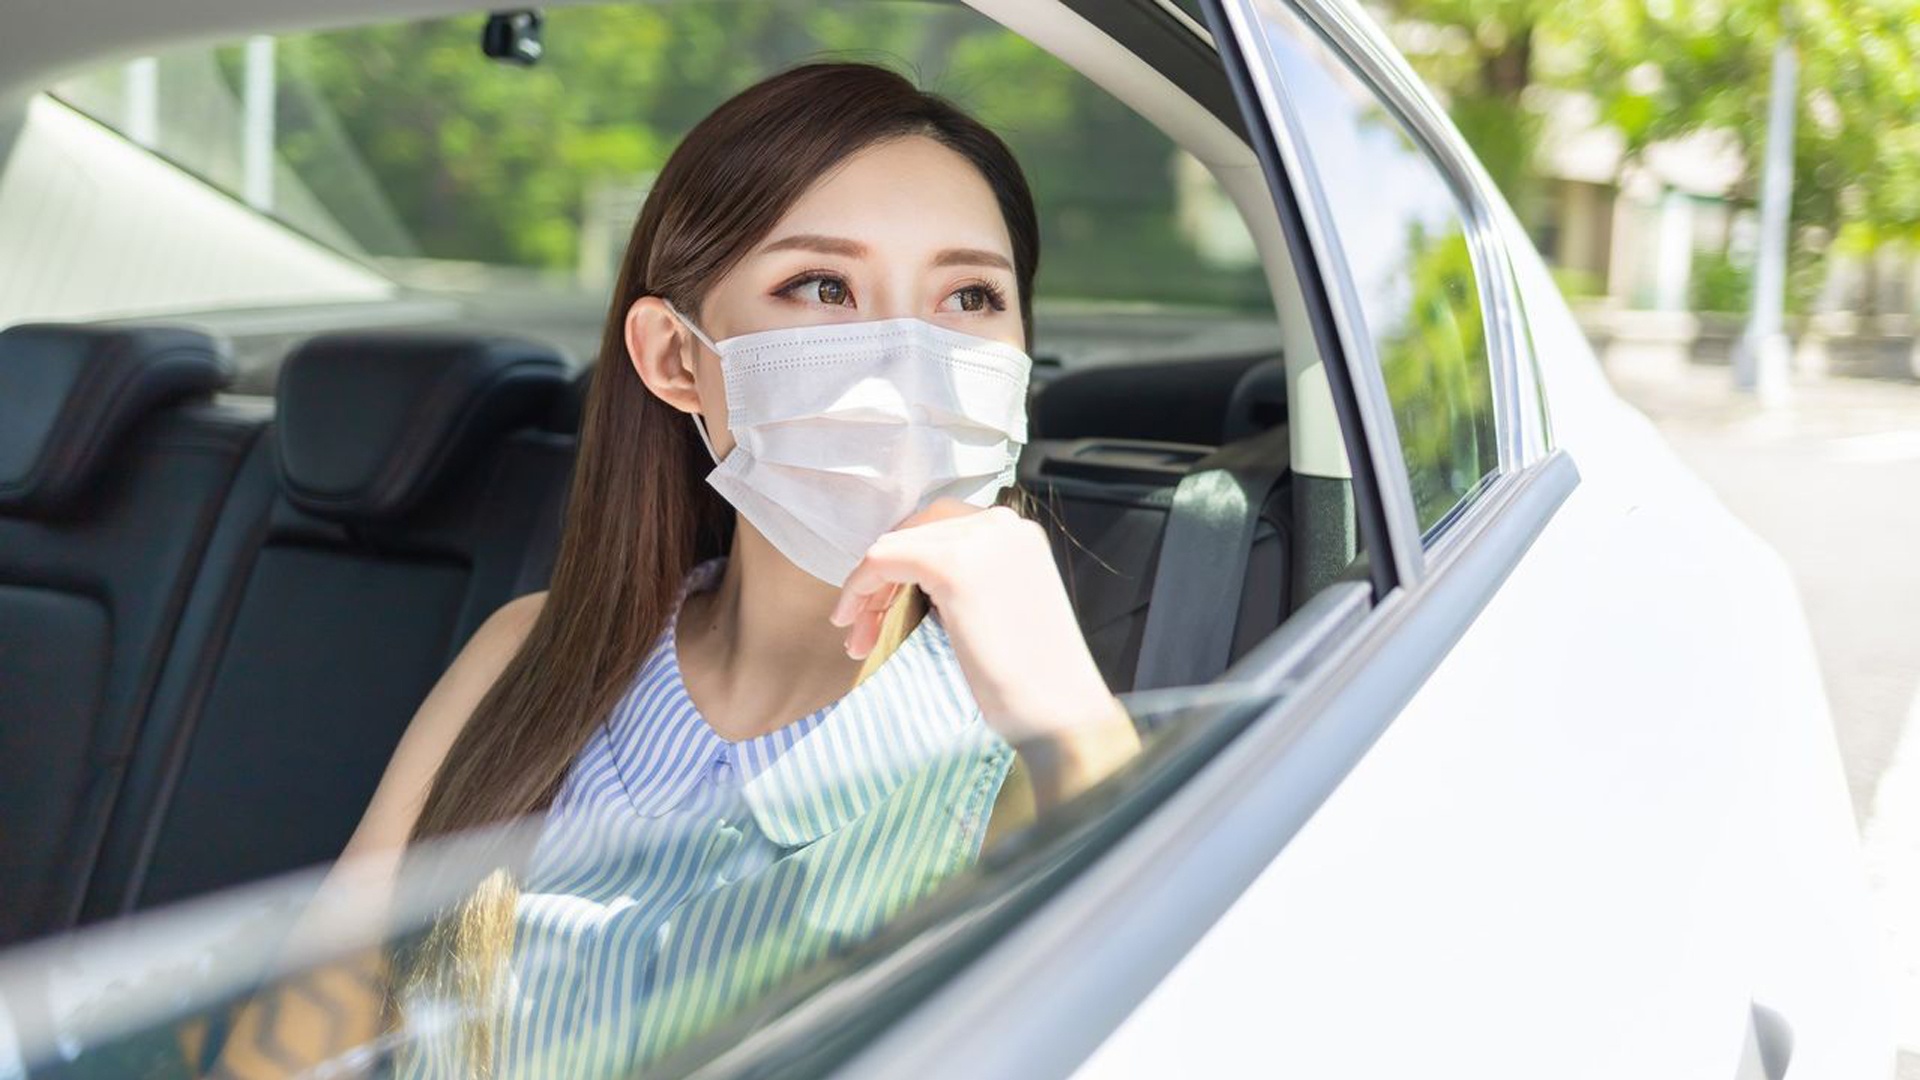 Таксисты в Японии теперь могут отказывать в услуге клиентам без масок